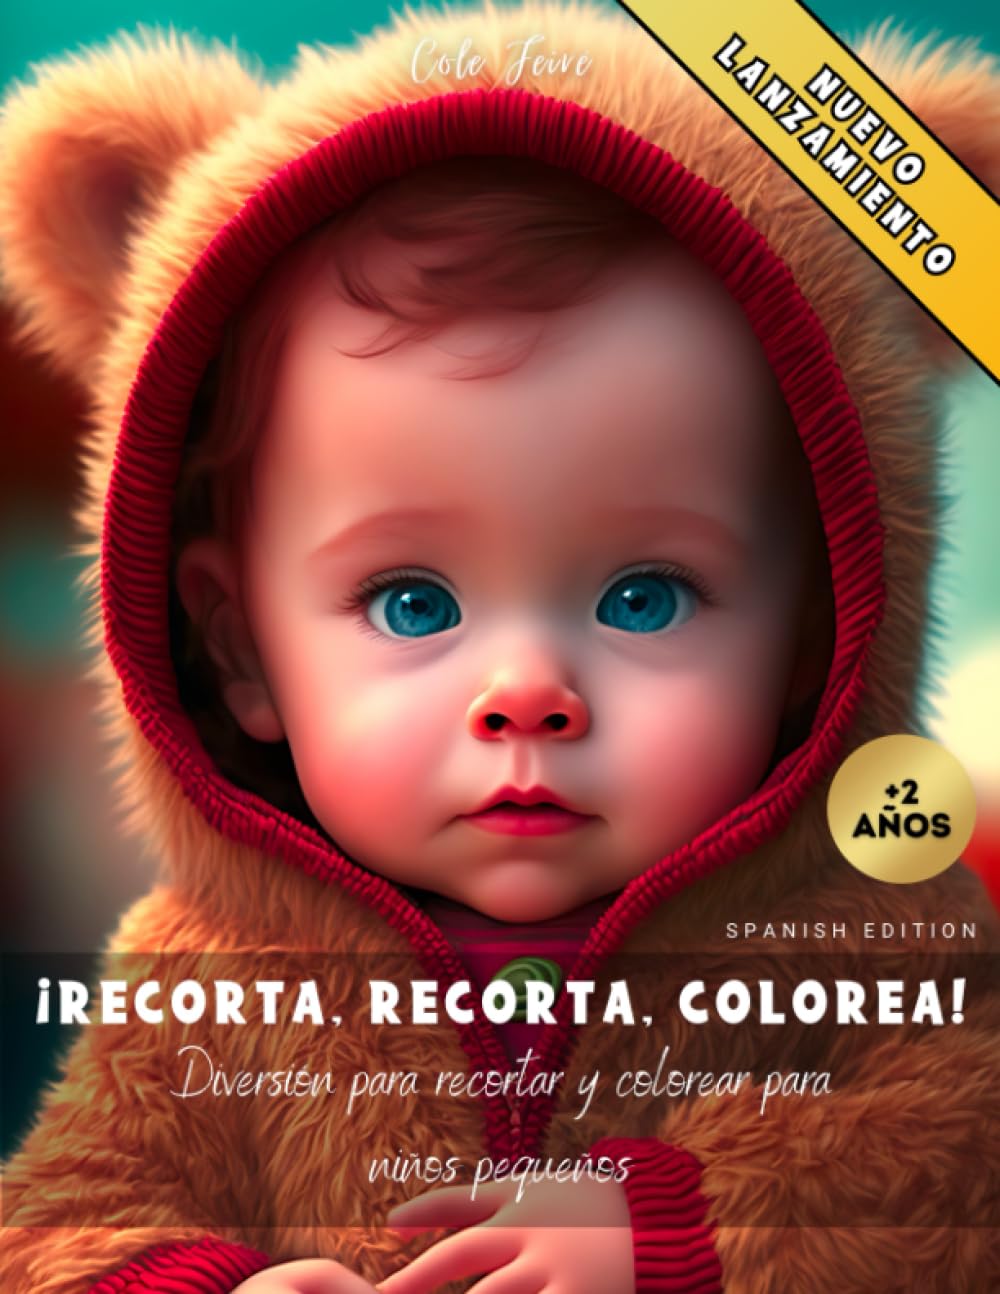 Libro: ¡Recorta, recorta, colorea! - Diversión para recortar y colorear para niños pequeños por Cole Feiré